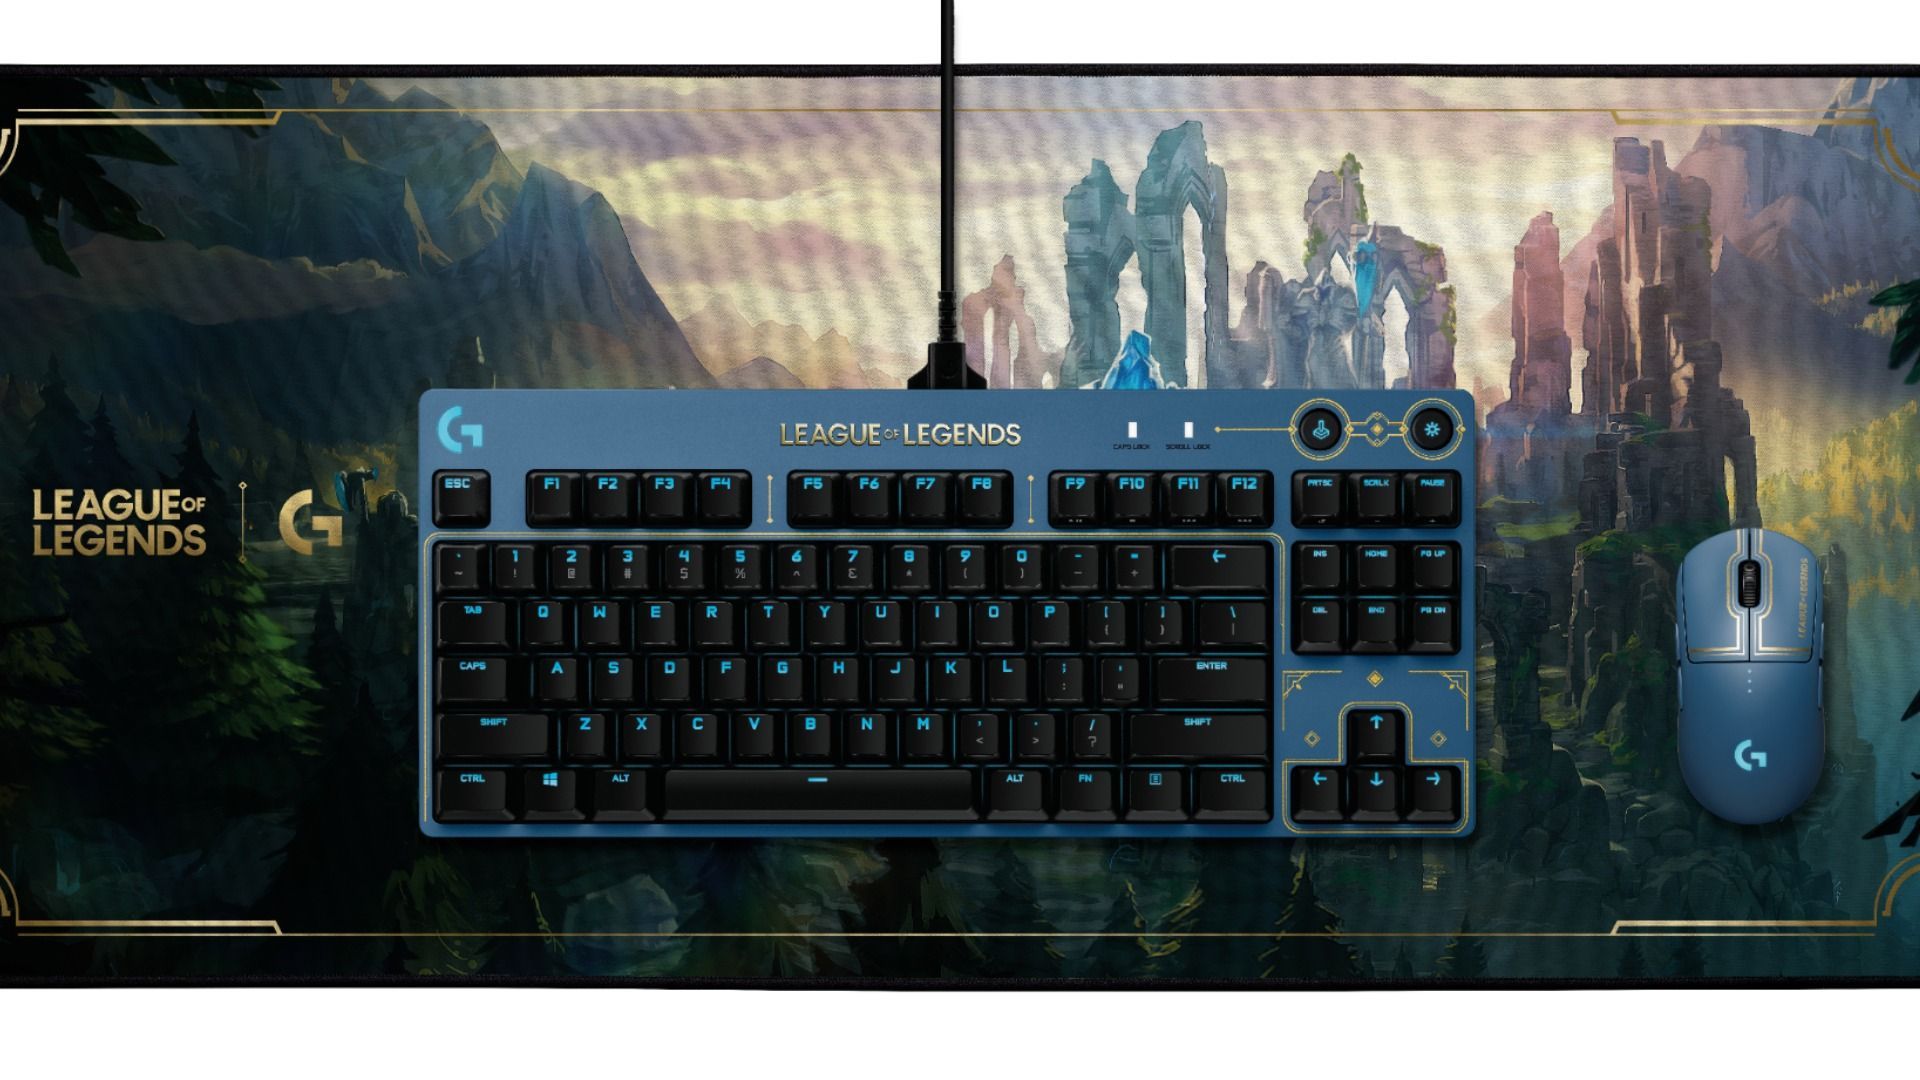 Logitech G presenta su teclado, ratón, auriculares y alfombrilla de League of Legends - Vandal Ware